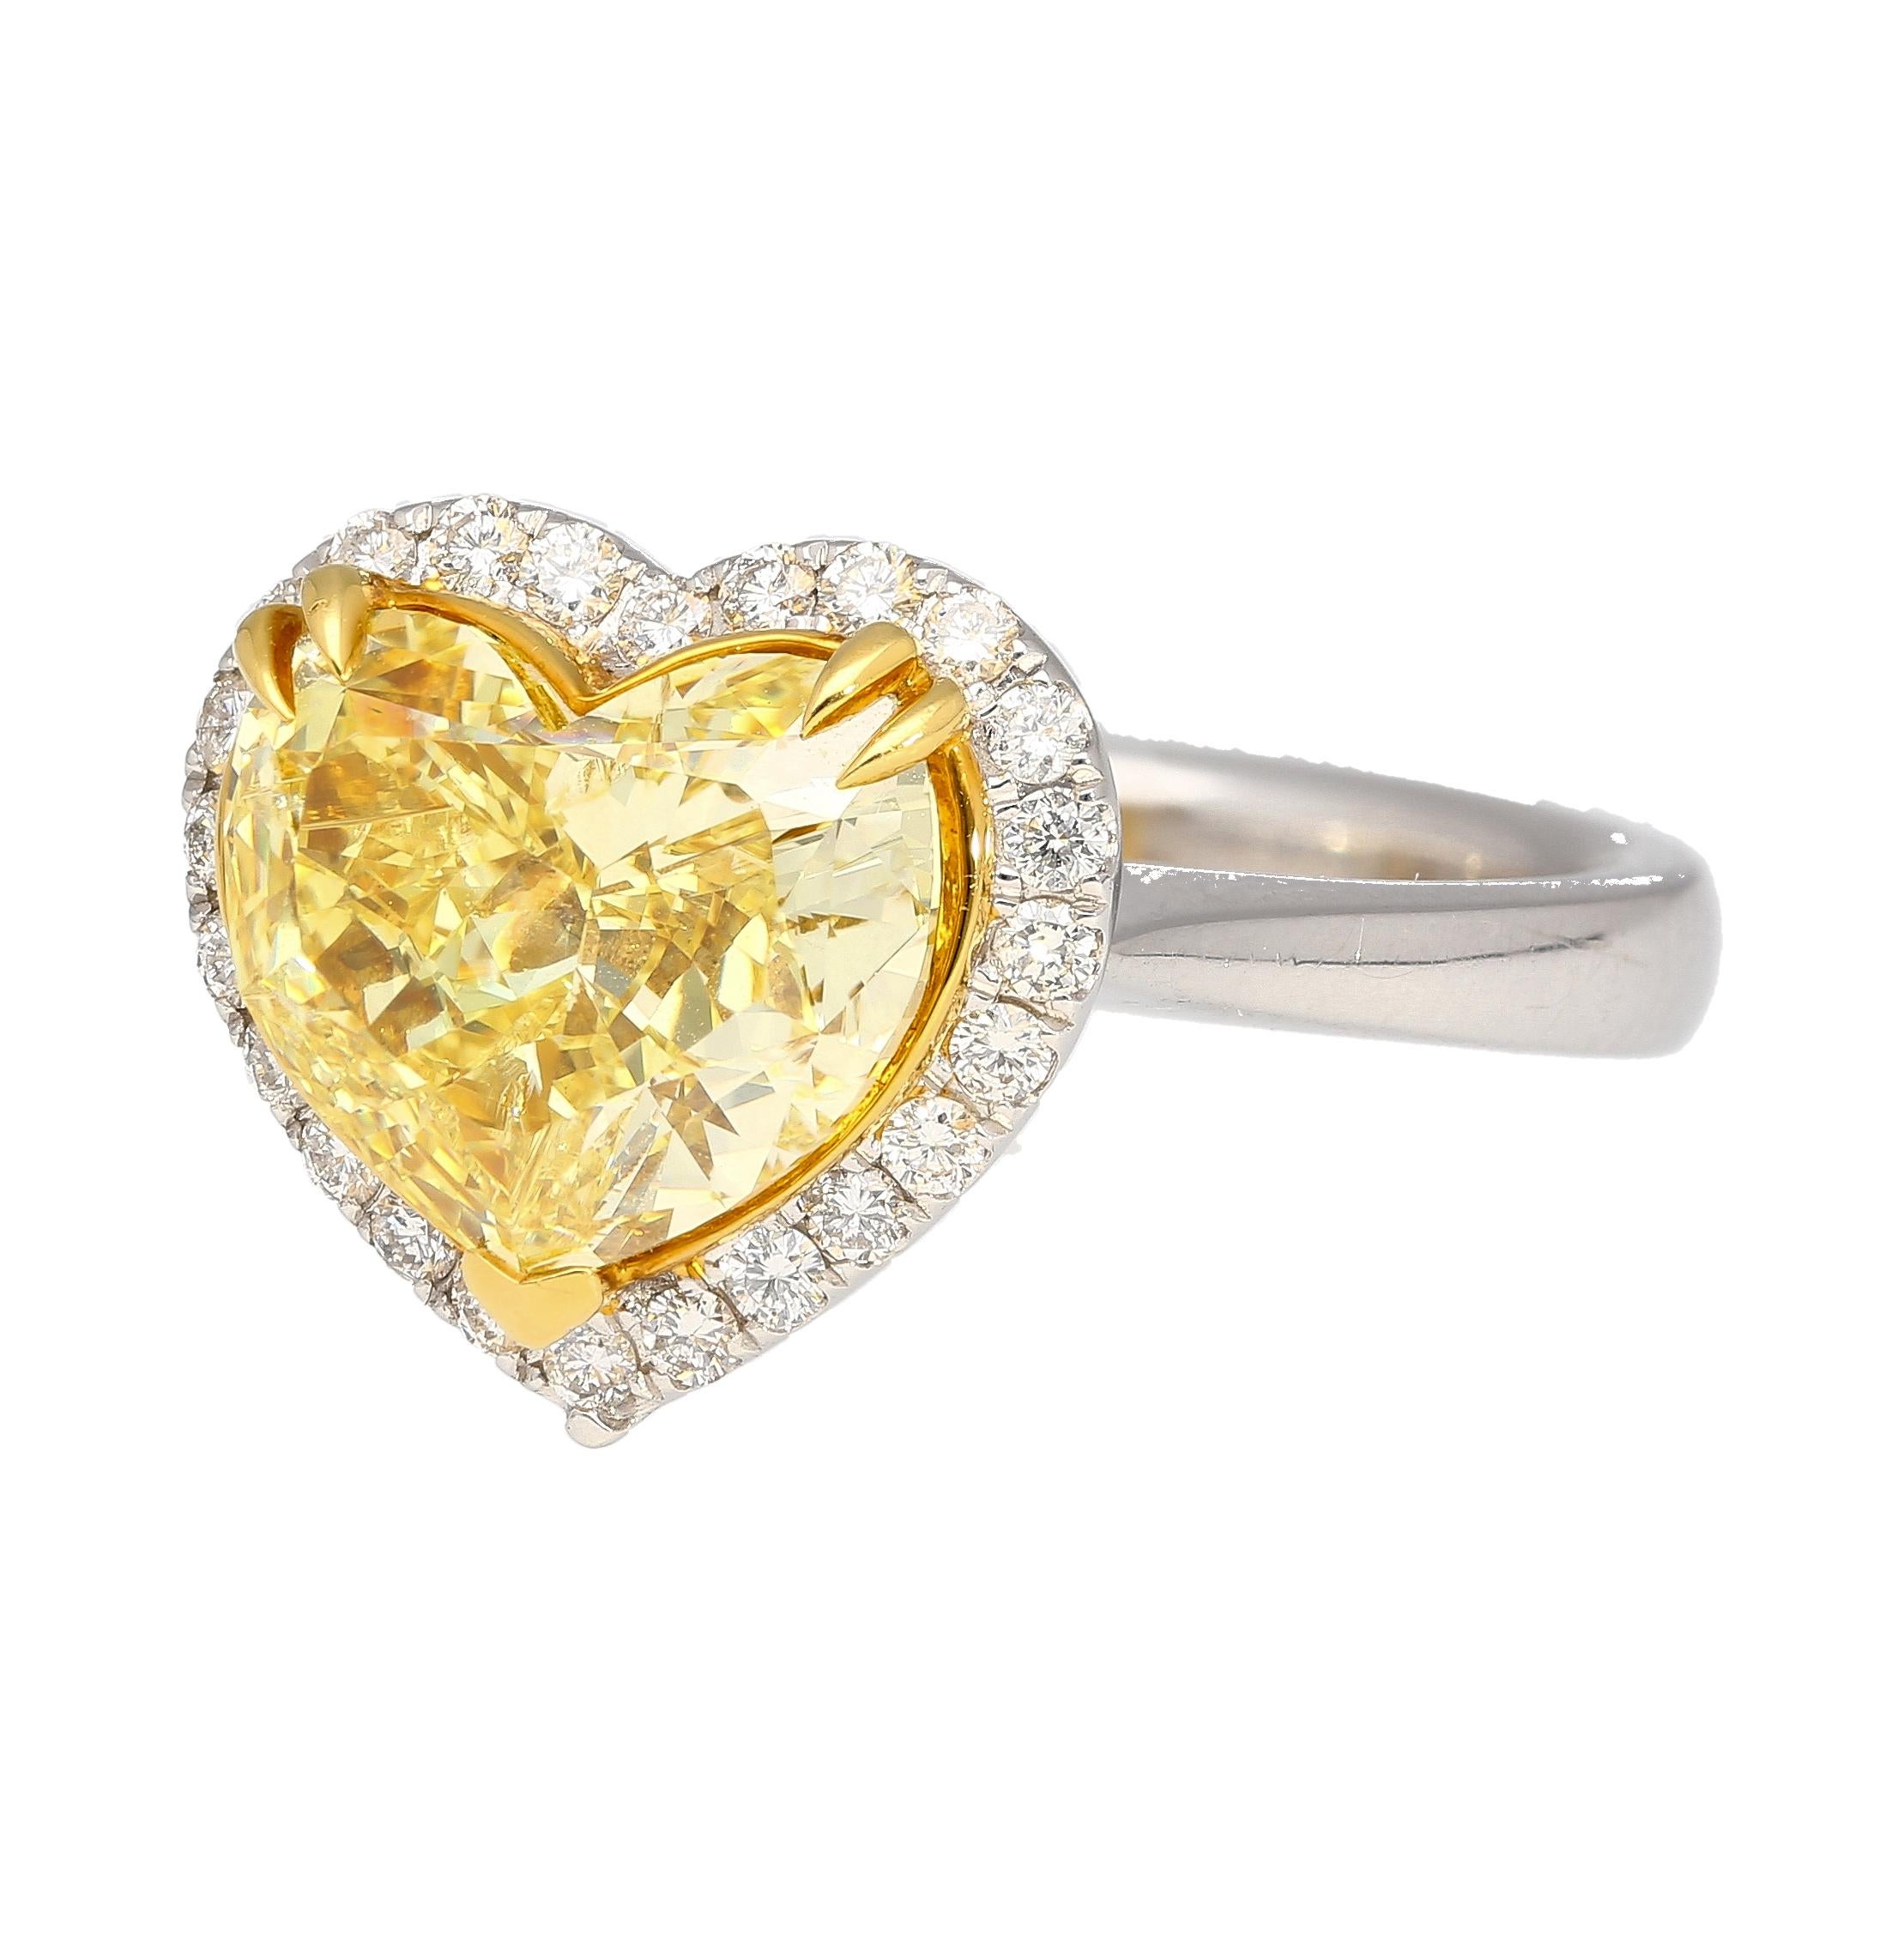 GIA-zertifizierter 3,32 Karat Fancy Intense Yellow Verlobungsring aus natürlichen Diamanten mit einem Halo aus weißen Diamanten im Rundschliff. Gefasst in 18 Karat massivem Weiß- und Gelbgold. Der Mittelstein ist ein echtes Investitionsobjekt.